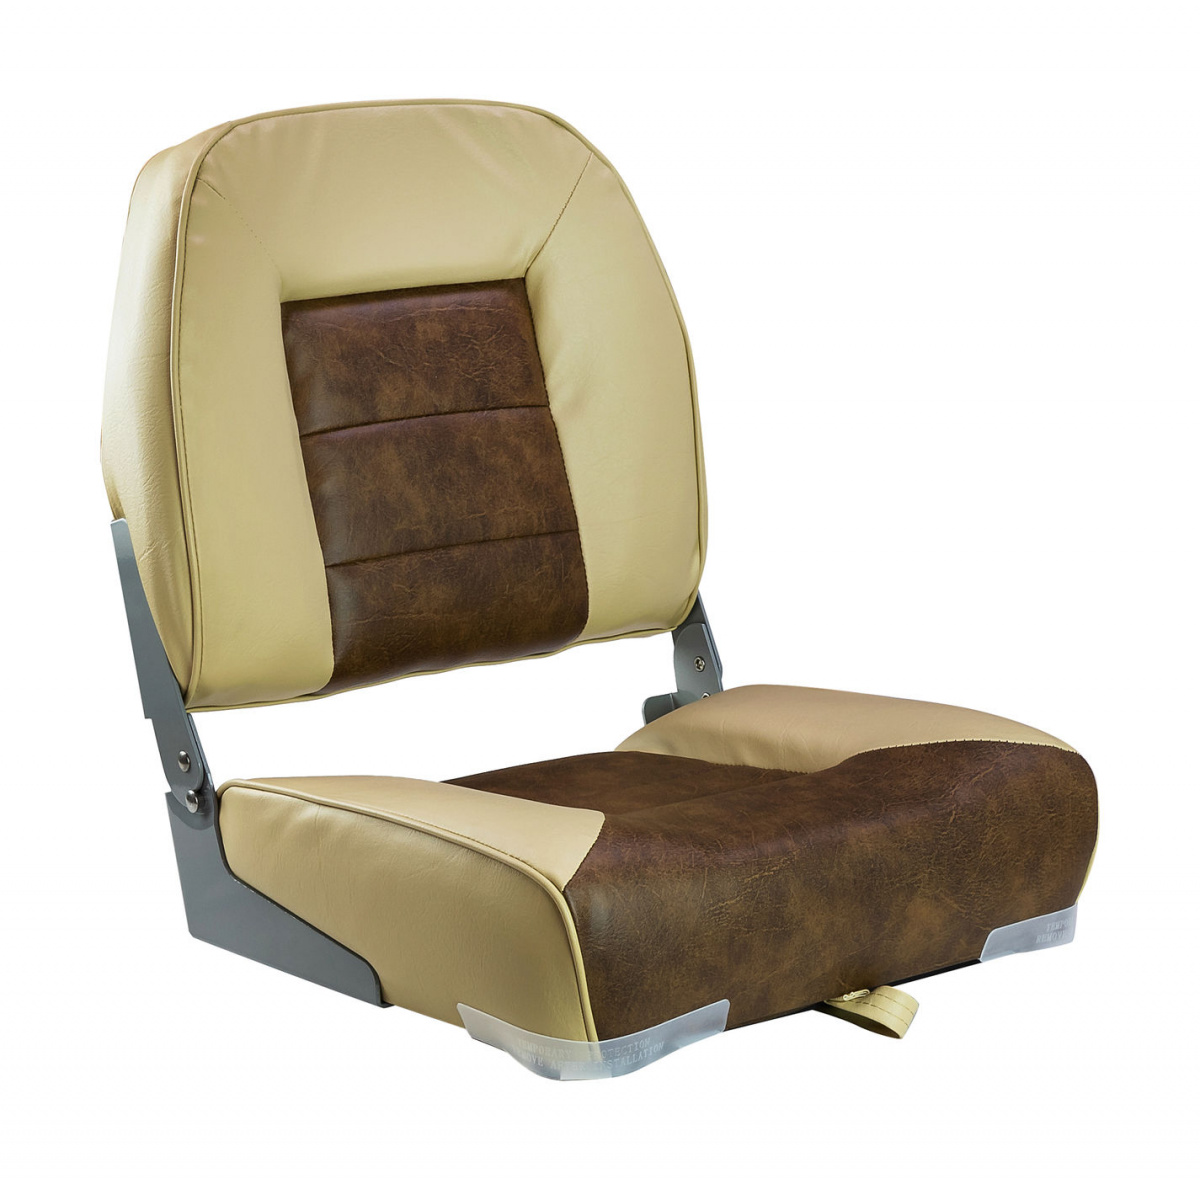 Кресло складное мягкое, обивка винил, цвет песочный/коричневый, Marine Rocket, 889-7779